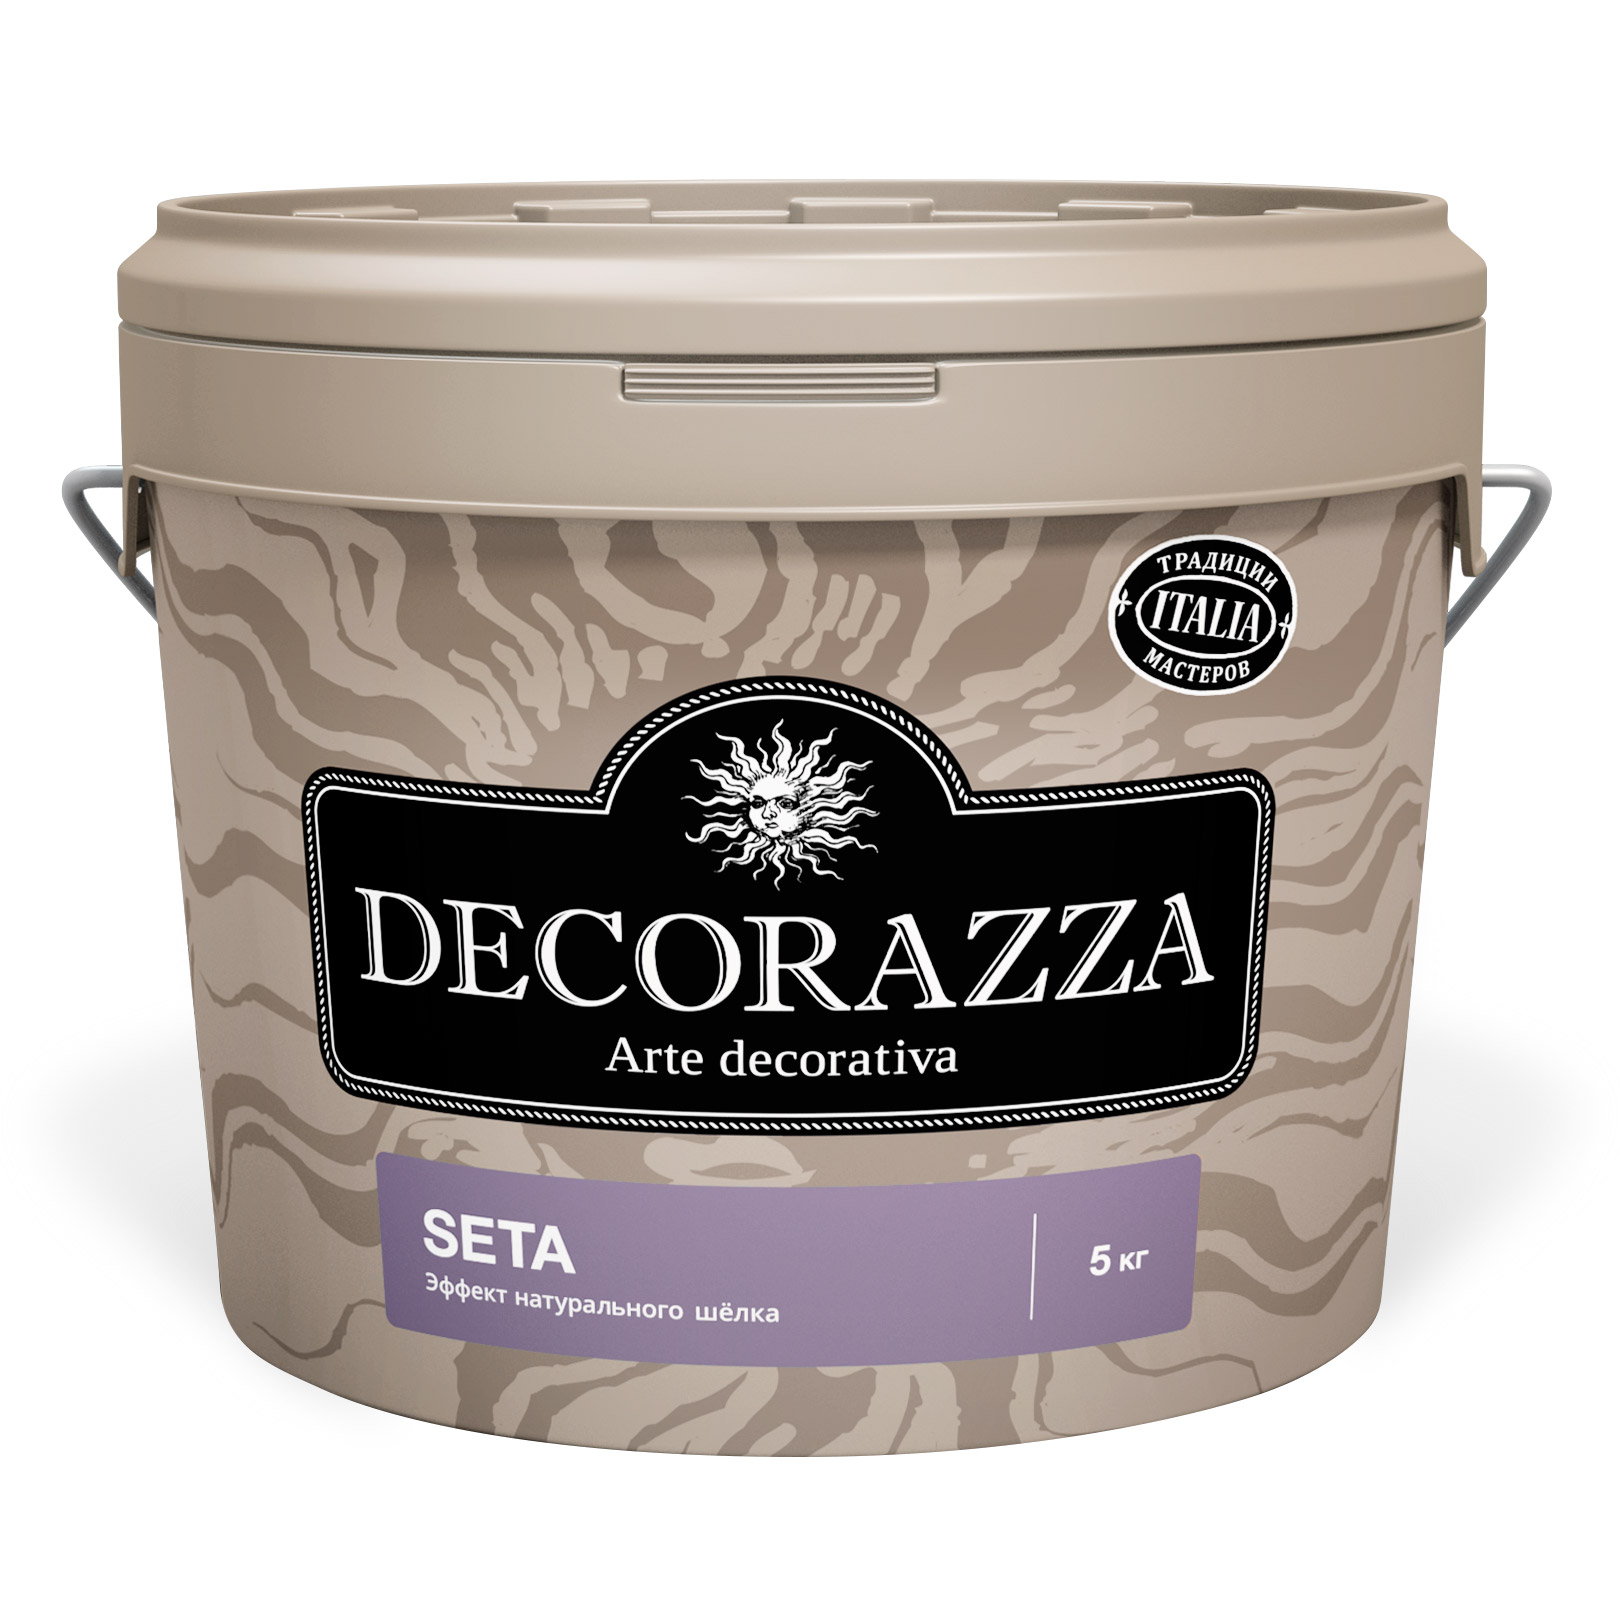 Краска Decorazza Seta Argento база серая 1 кг (DST001-1) краска decorazza seta argento база серая 5 кг dst001 5